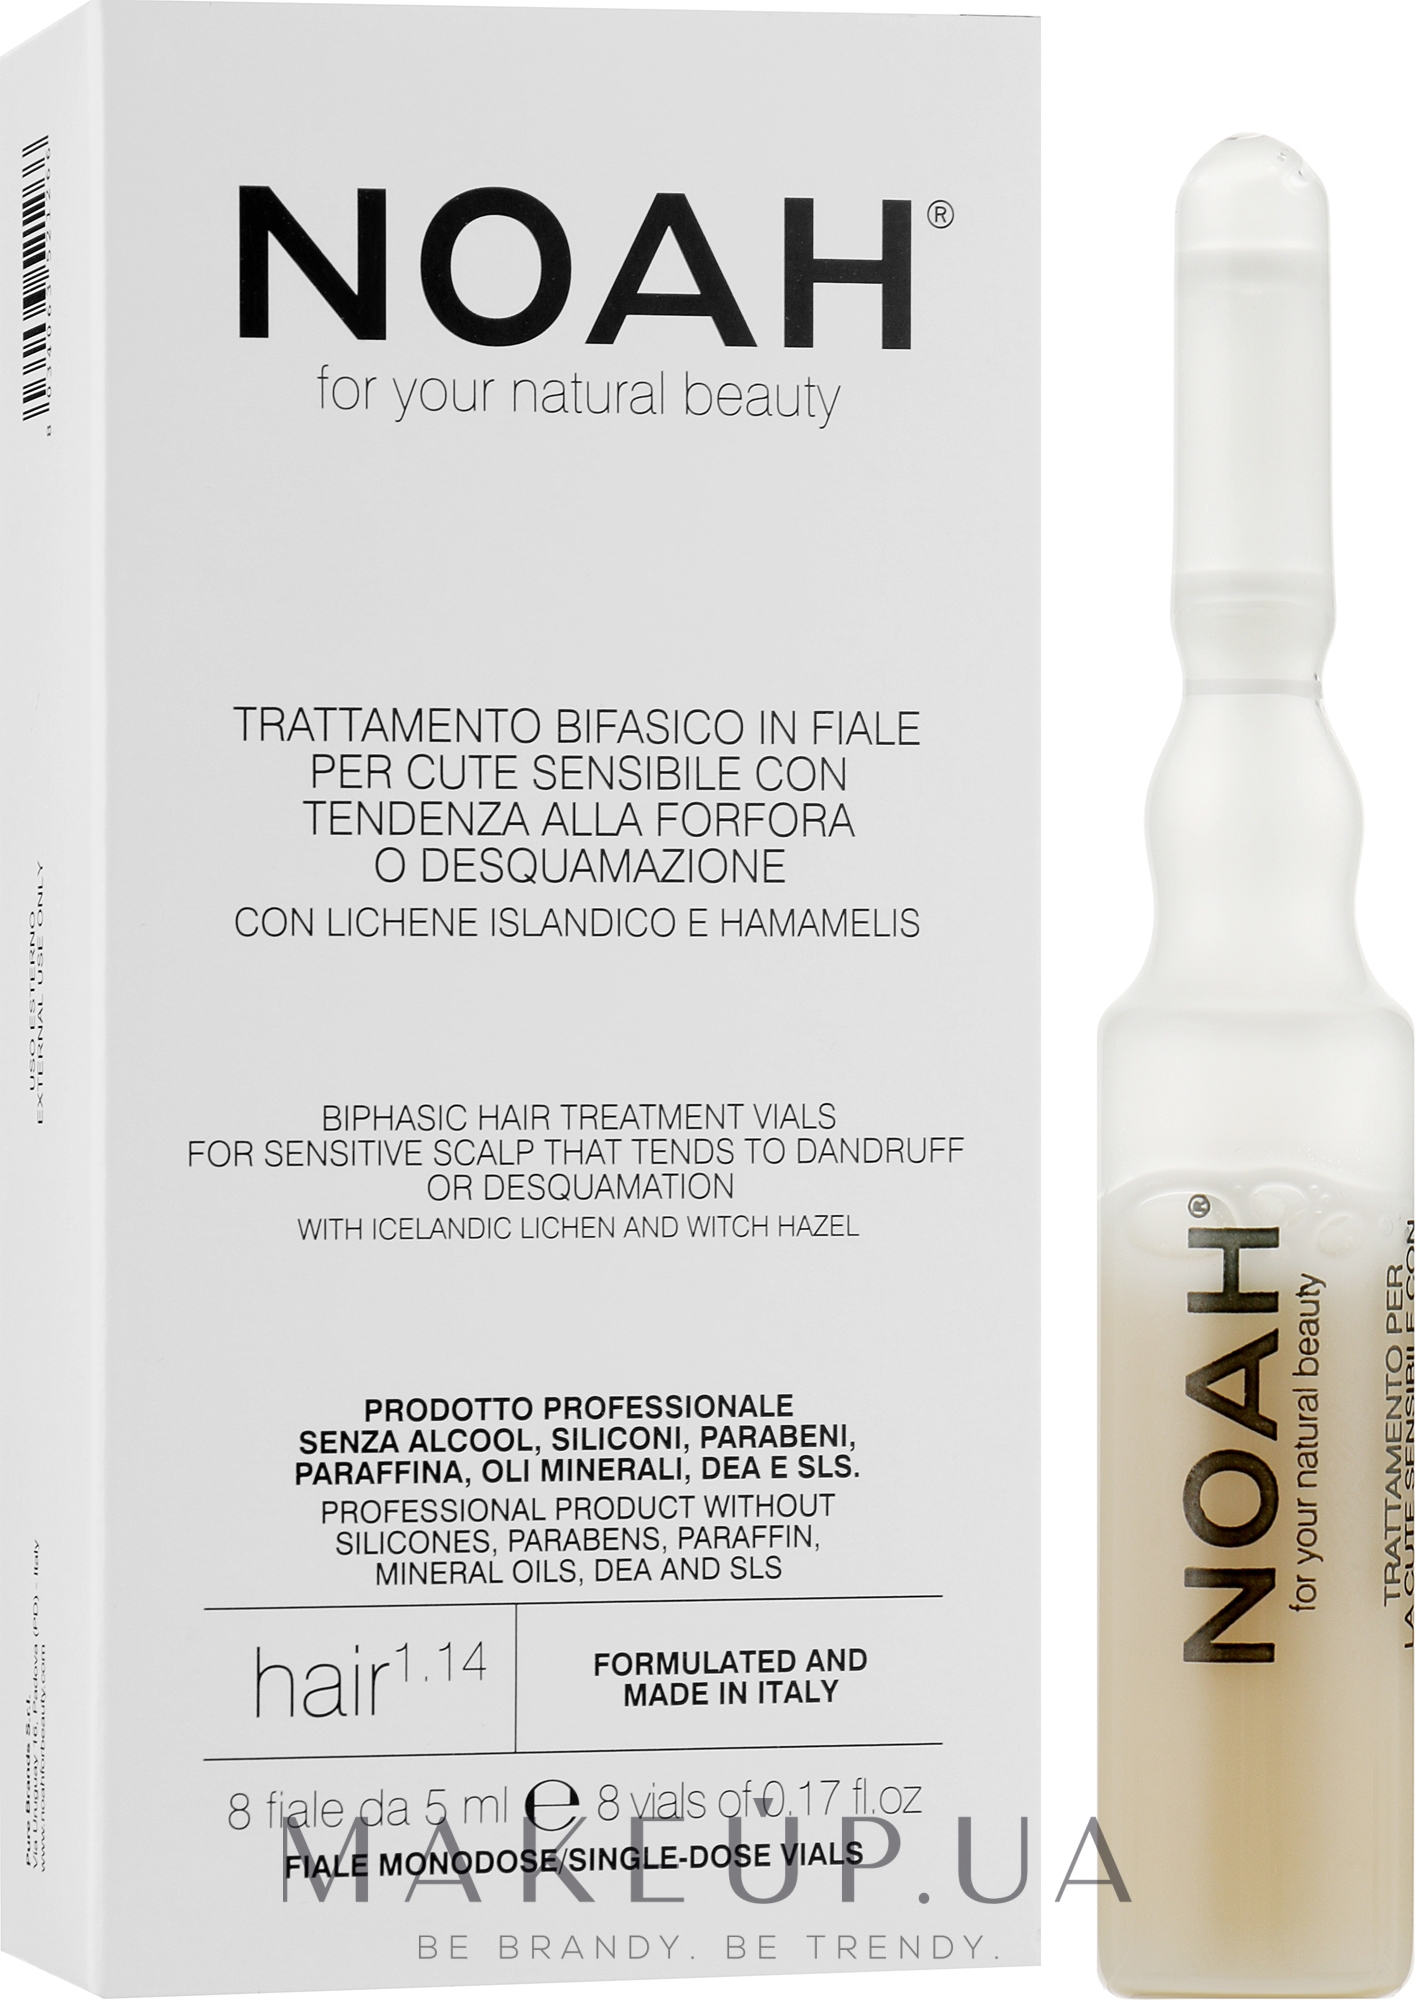 Двухфазная сыворотка для лечения волос для чувствительной, склонной к шелушению кожи - Noah Bifasic Hair Treatment Vials for Sensitive Scalp — фото 8x5ml